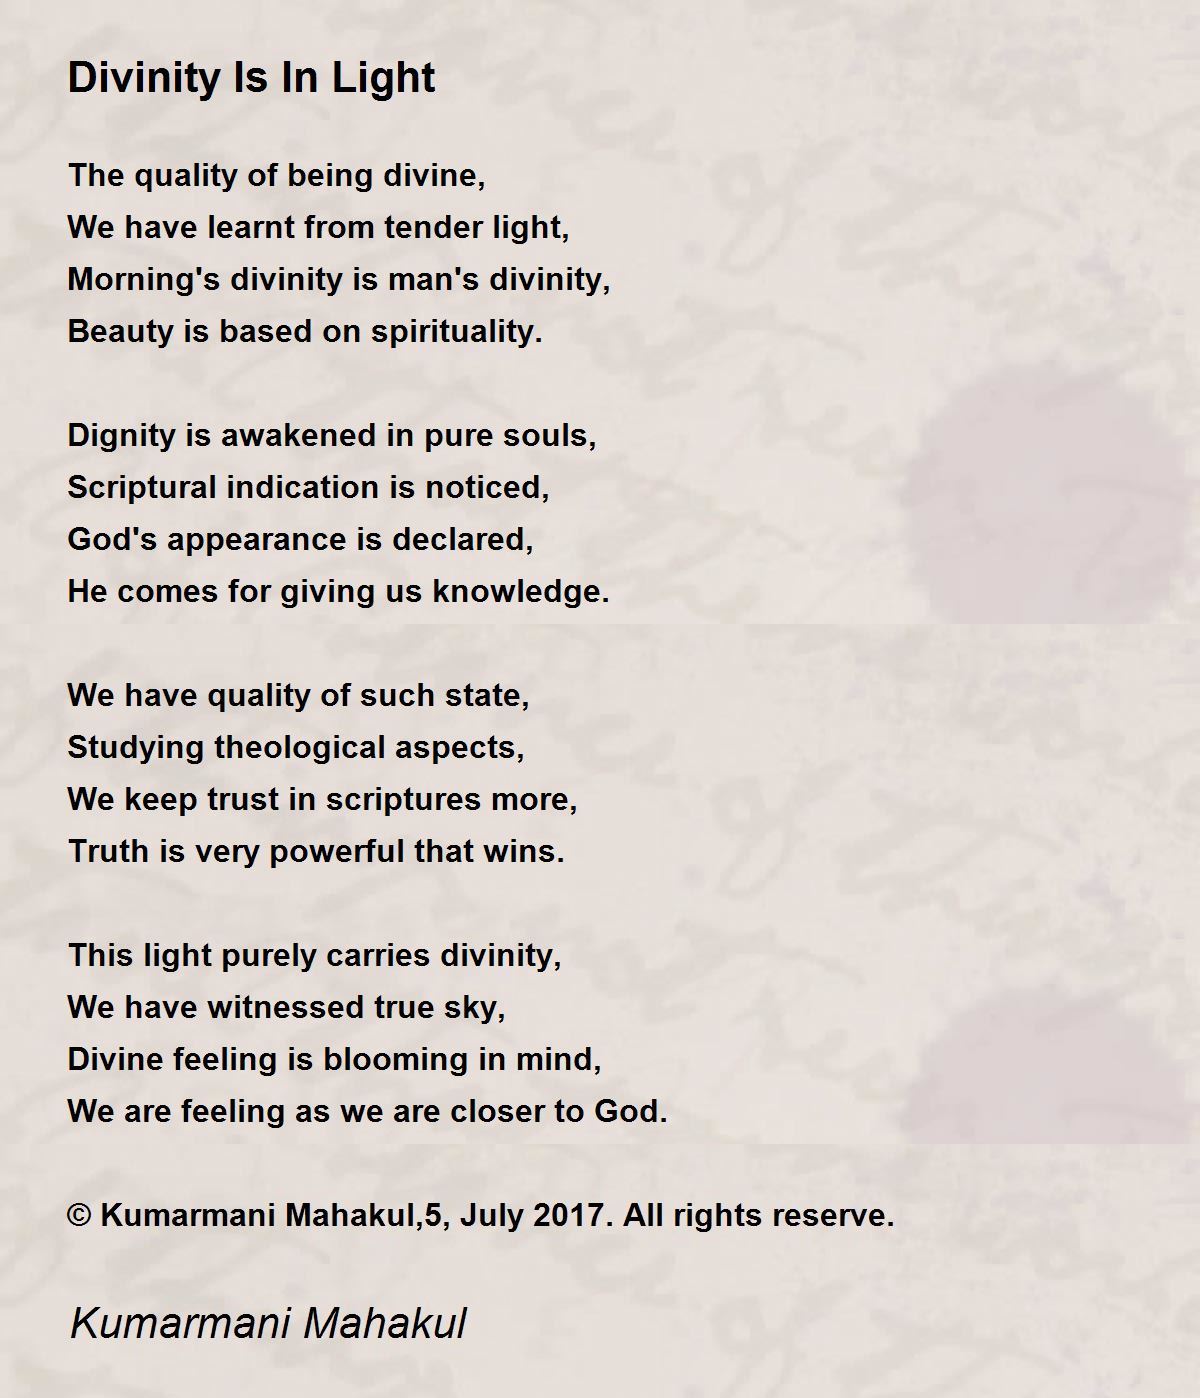 Divinity Is In Light - Divinity Is In Light Poem by Kumarmani Mahakul